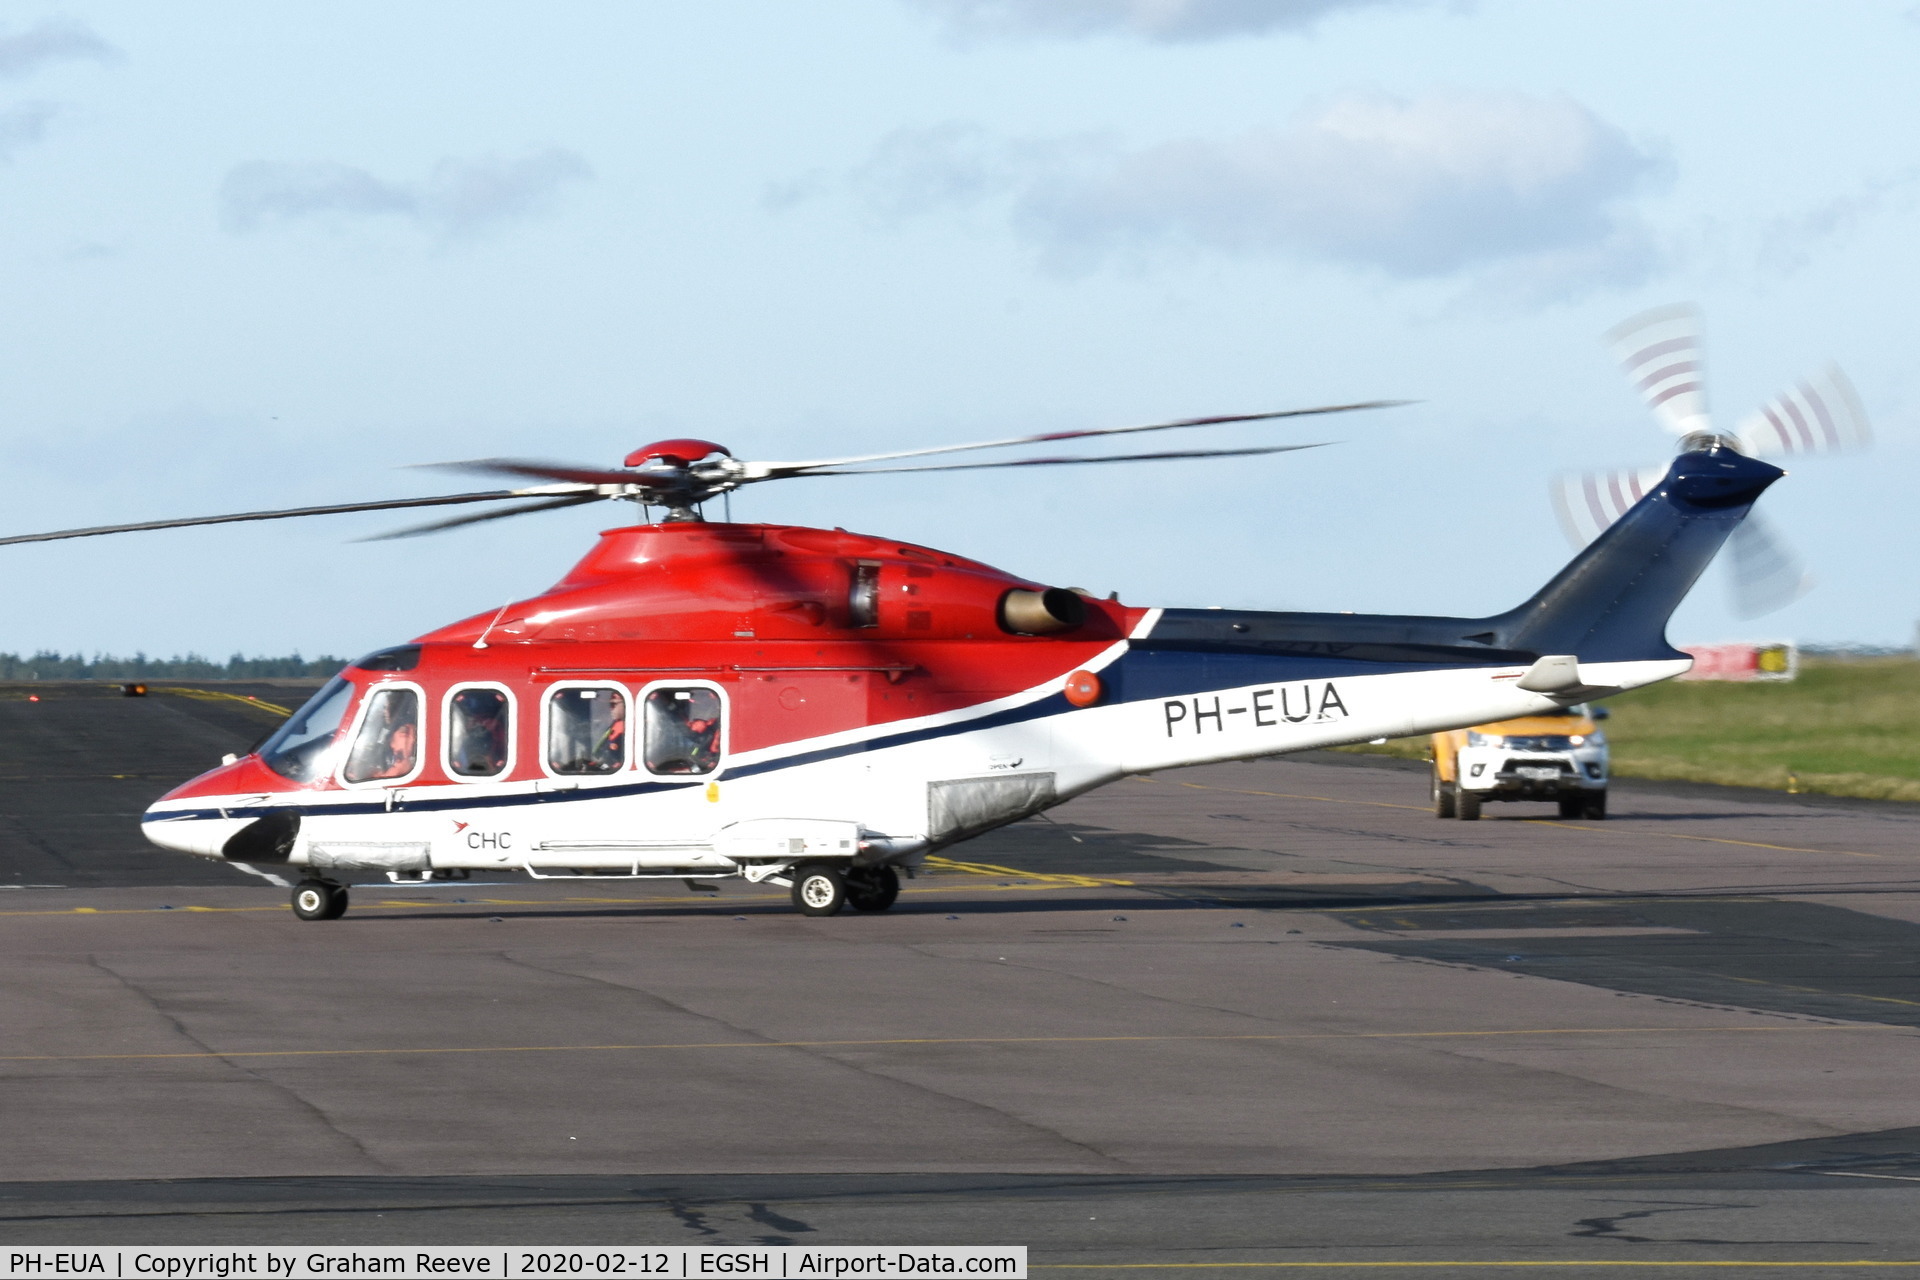 PH-EUA, 2007 AgustaWestland AW-139 C/N 31072, Just landed at Norwich.